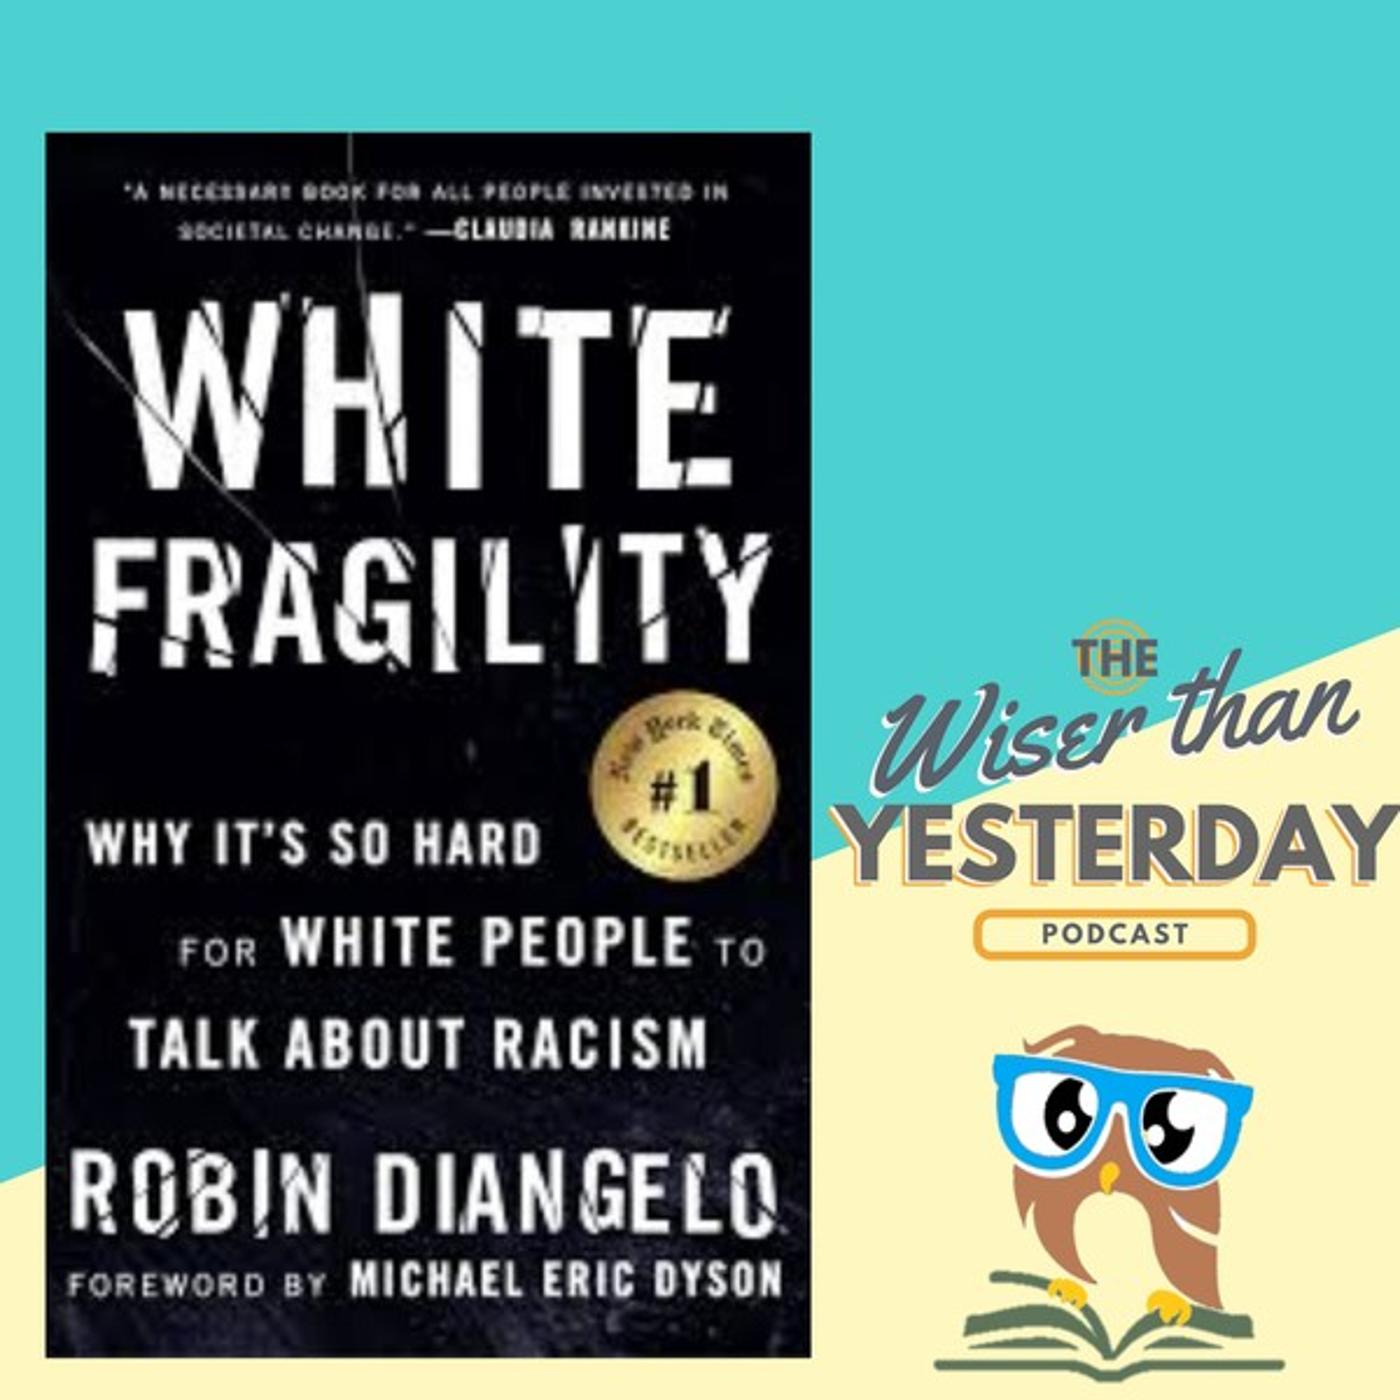 White fragility - Robin DiAngelo